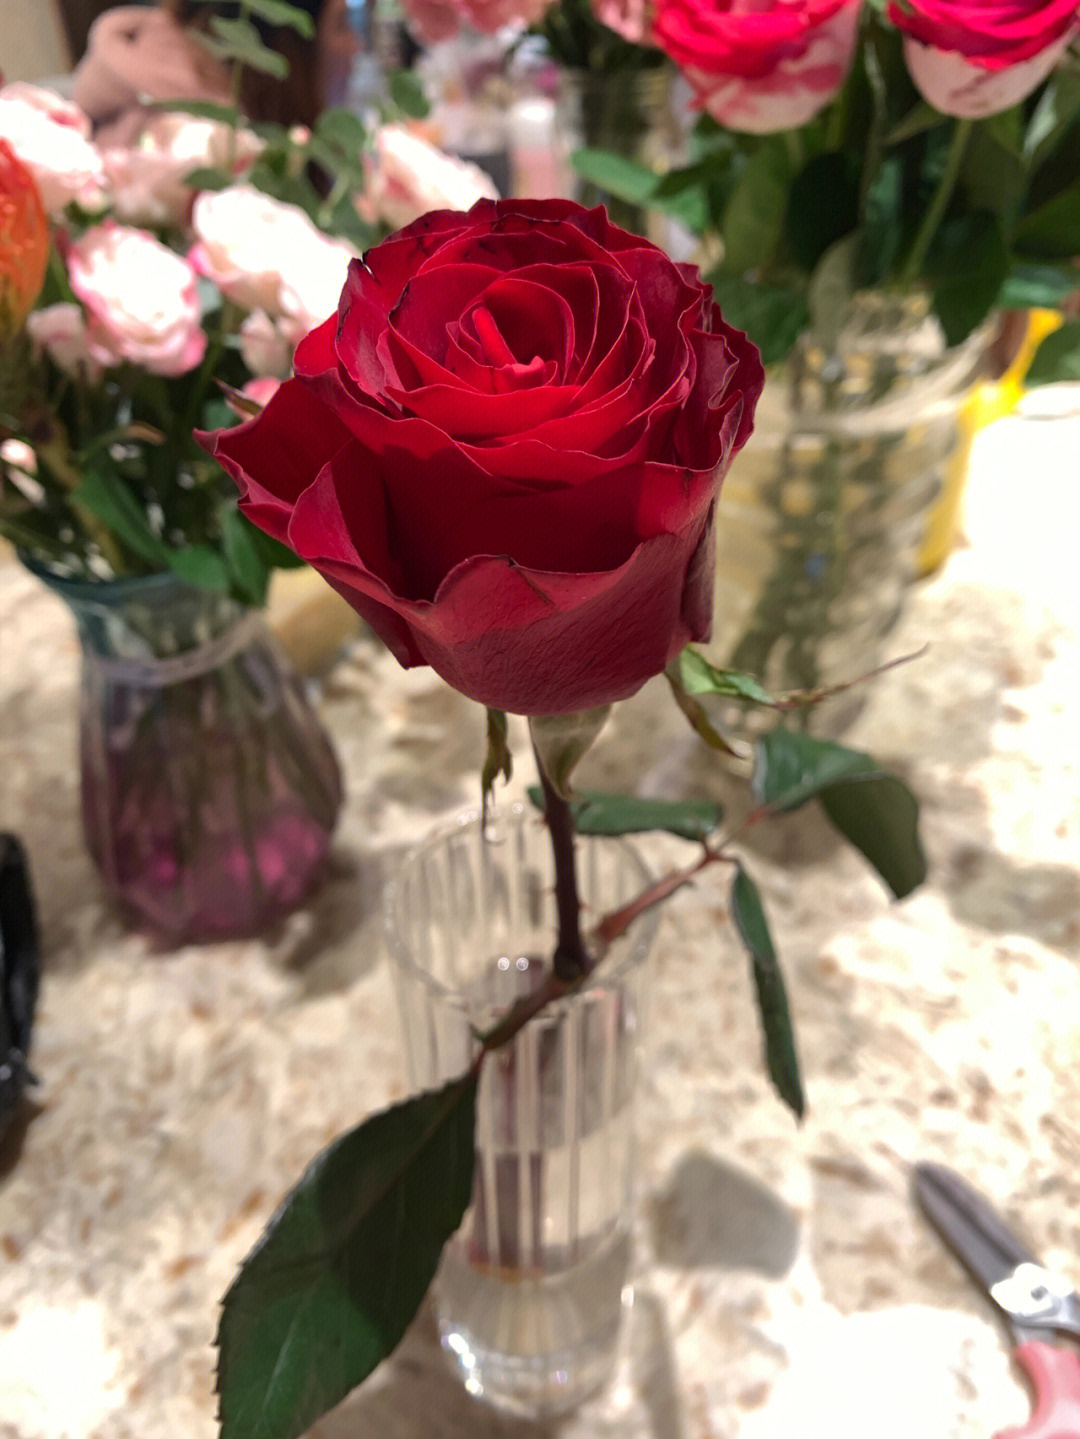 罗斯玫瑰花瓣图片